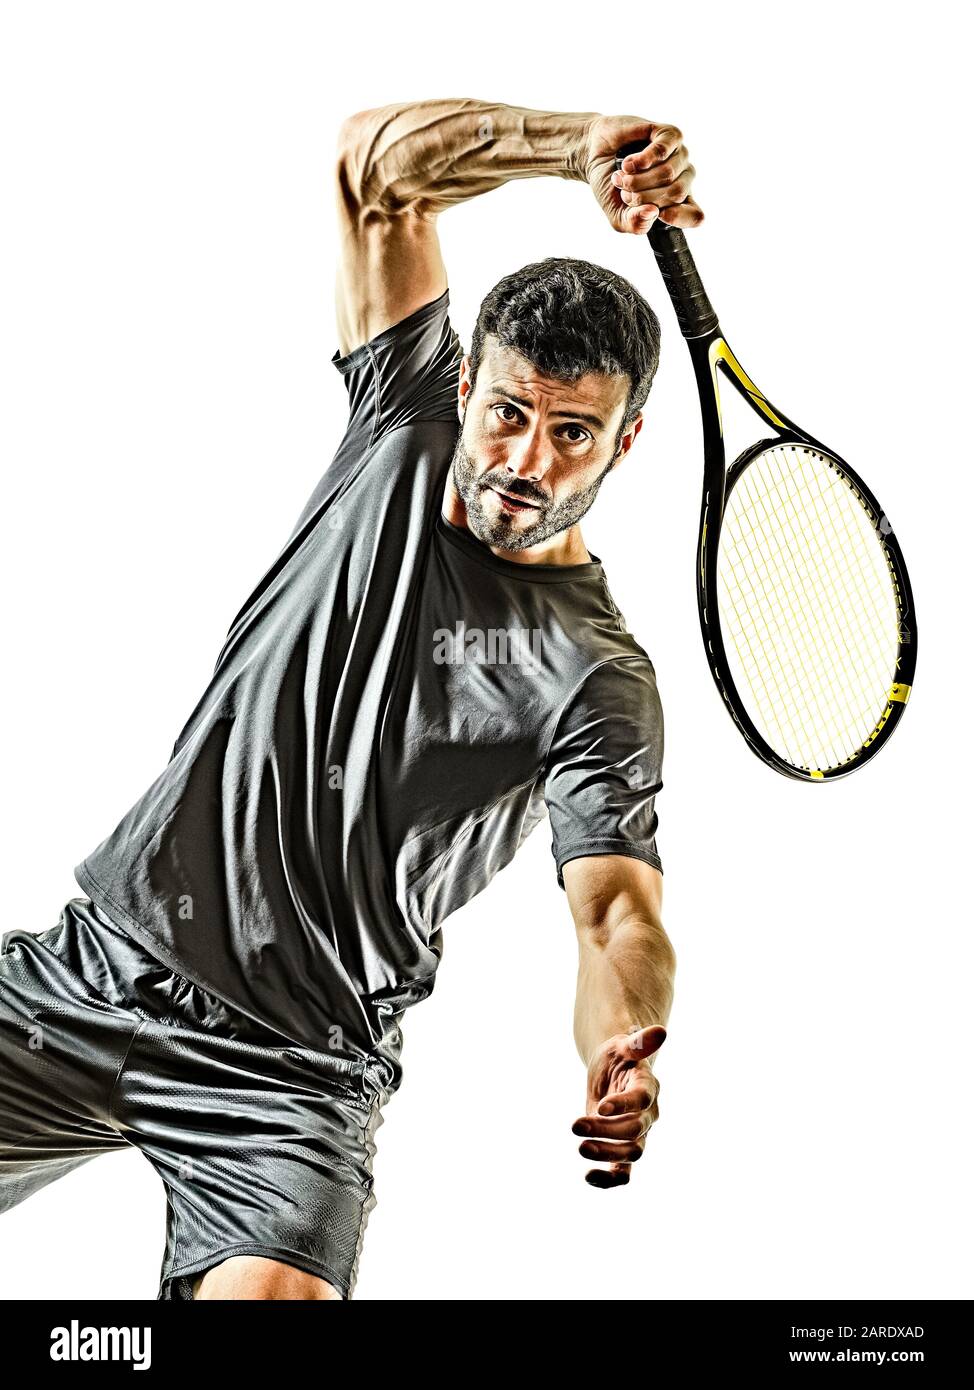 un jugador de tenis maduro caucásico hombre vista frontal delantera en estudio aislado en fondo blanco Foto de stock